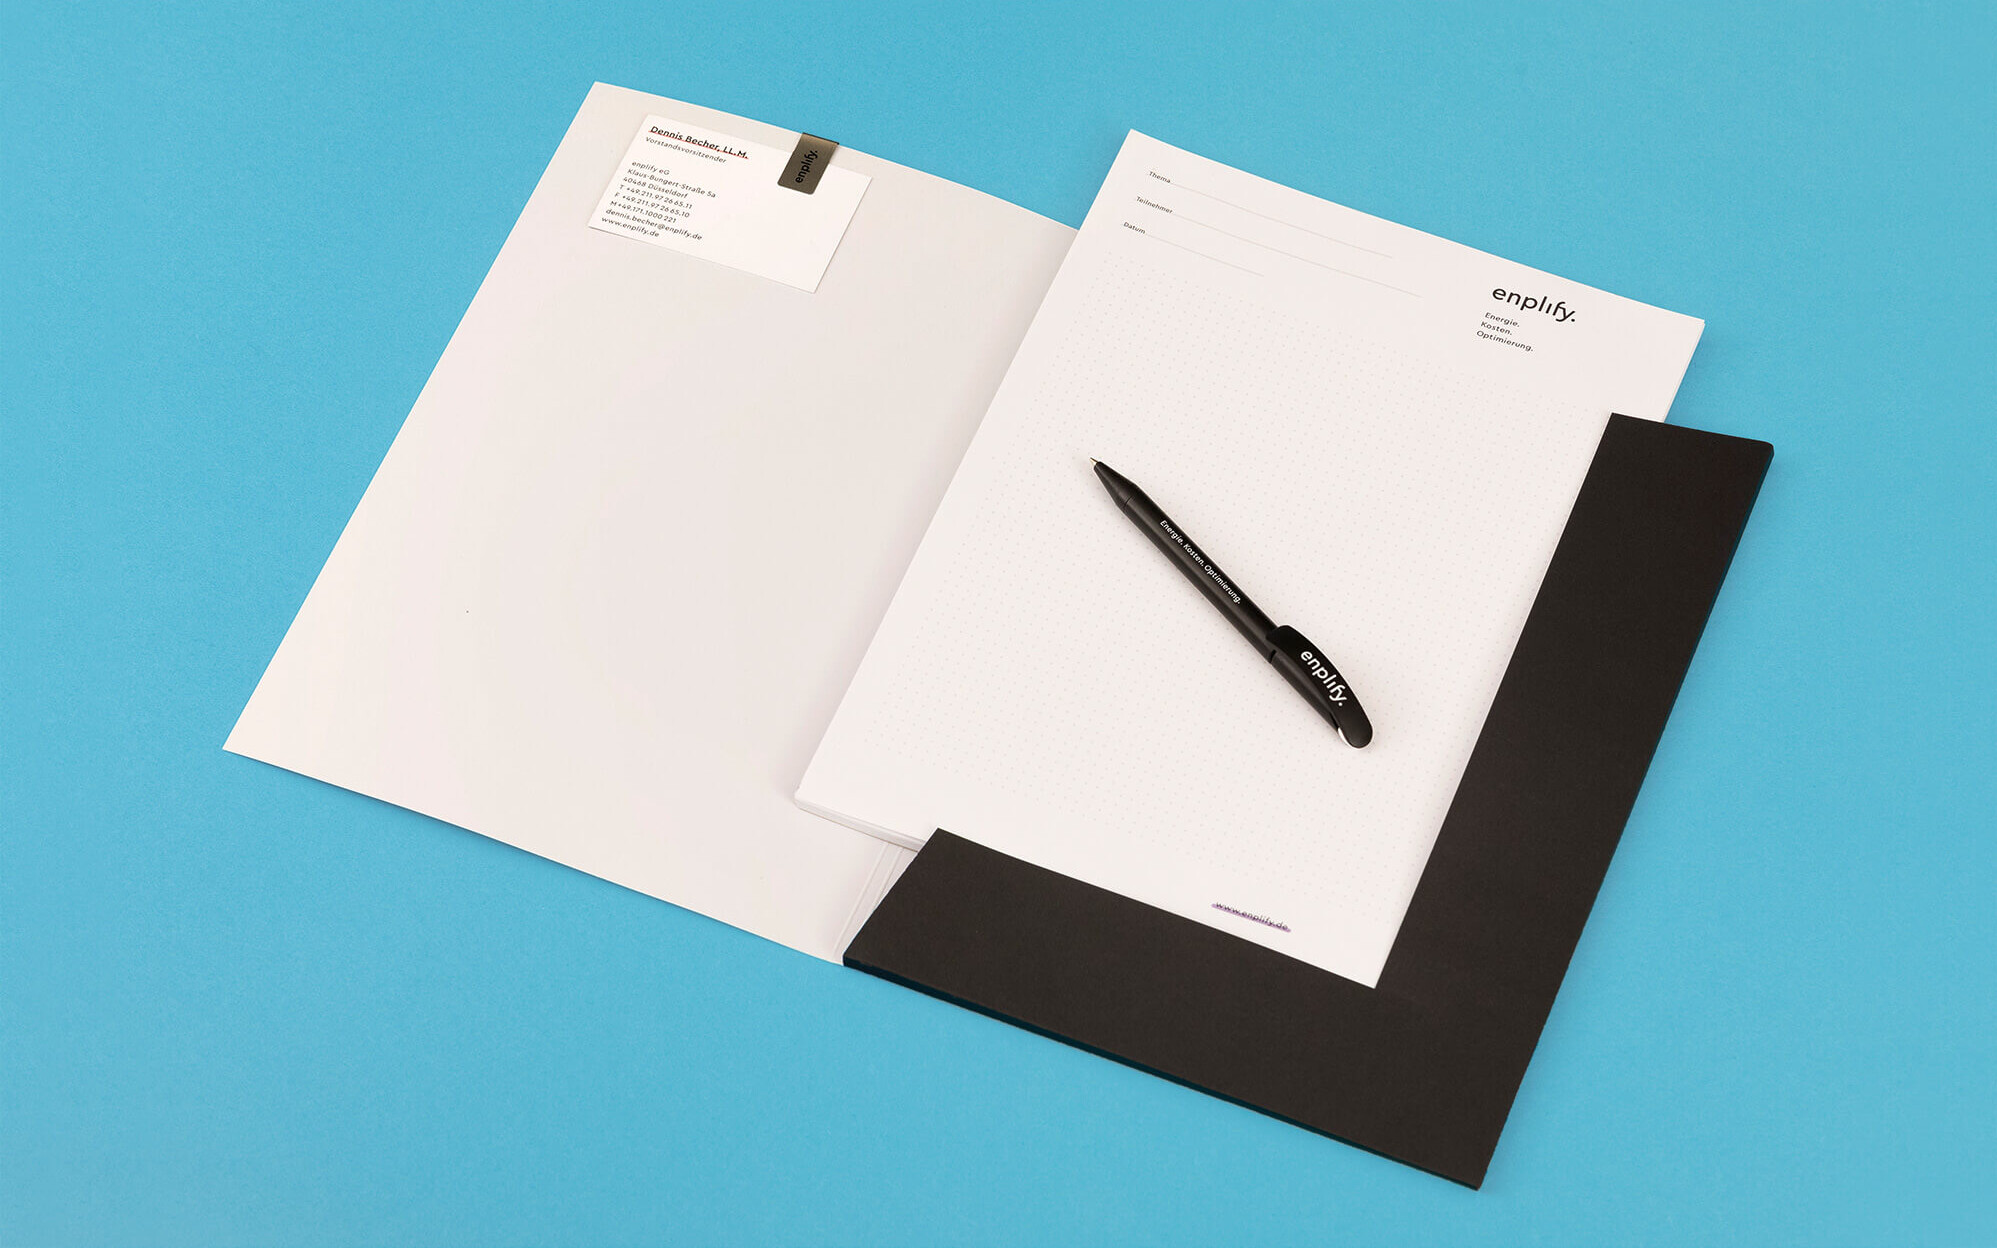 Mappe mit Notizzetteln, Kugelschreiber, Visitenkarte und Briefklammer im enplify Corporate Design